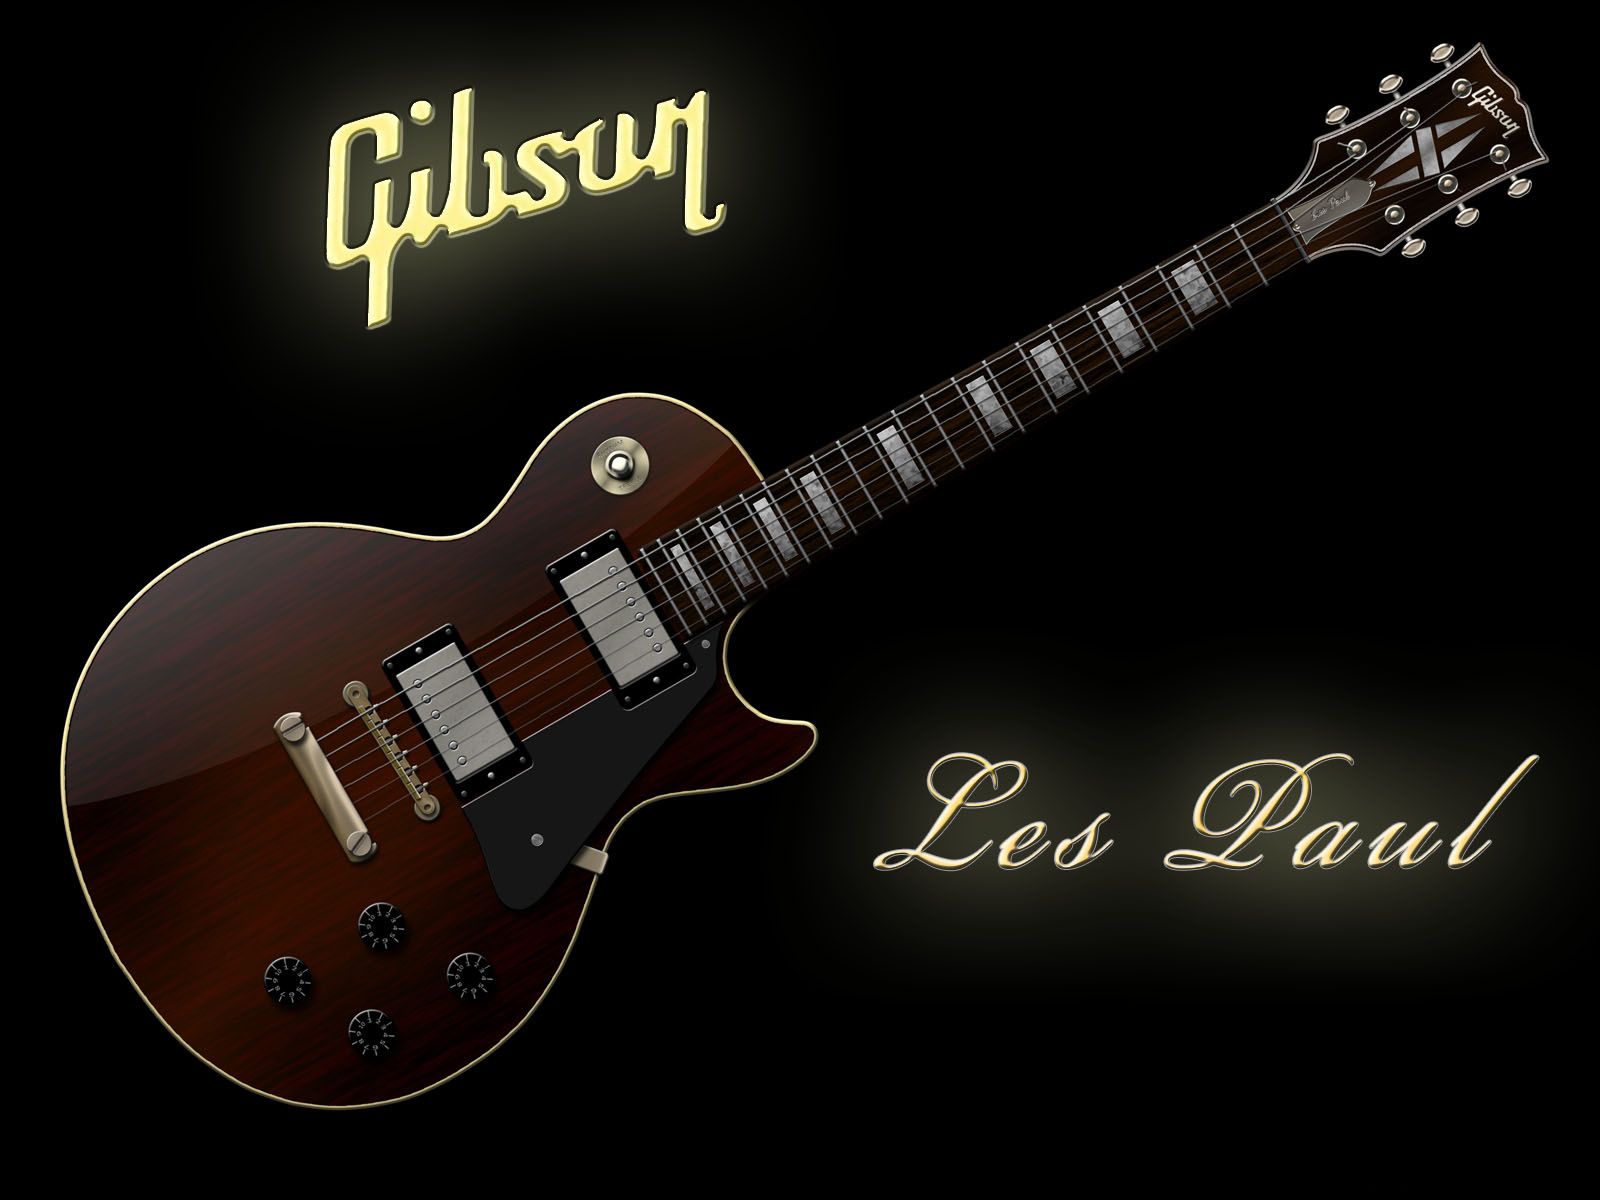 Les Paul Electric Guitar Wallpapers